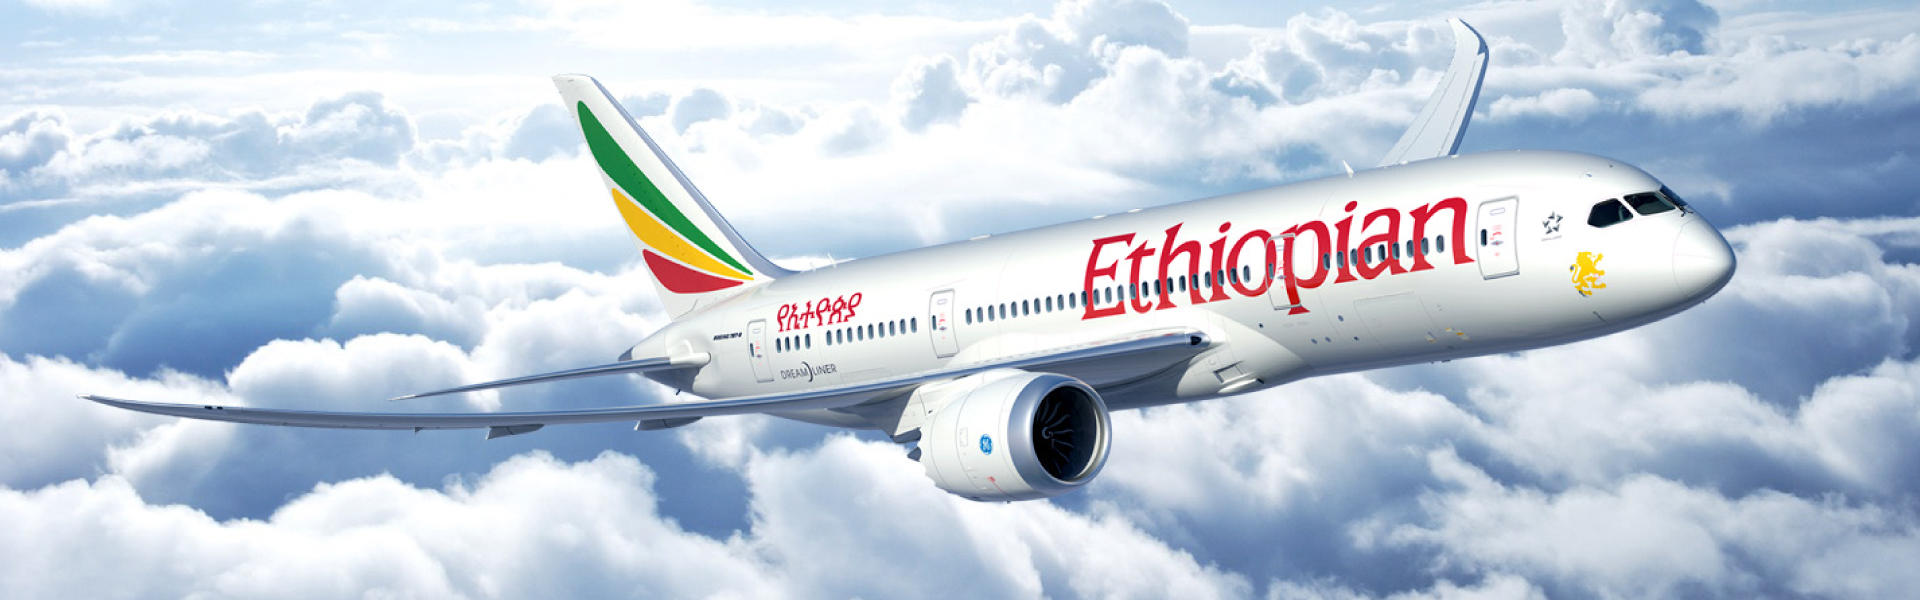 Ethiopian airlines Media